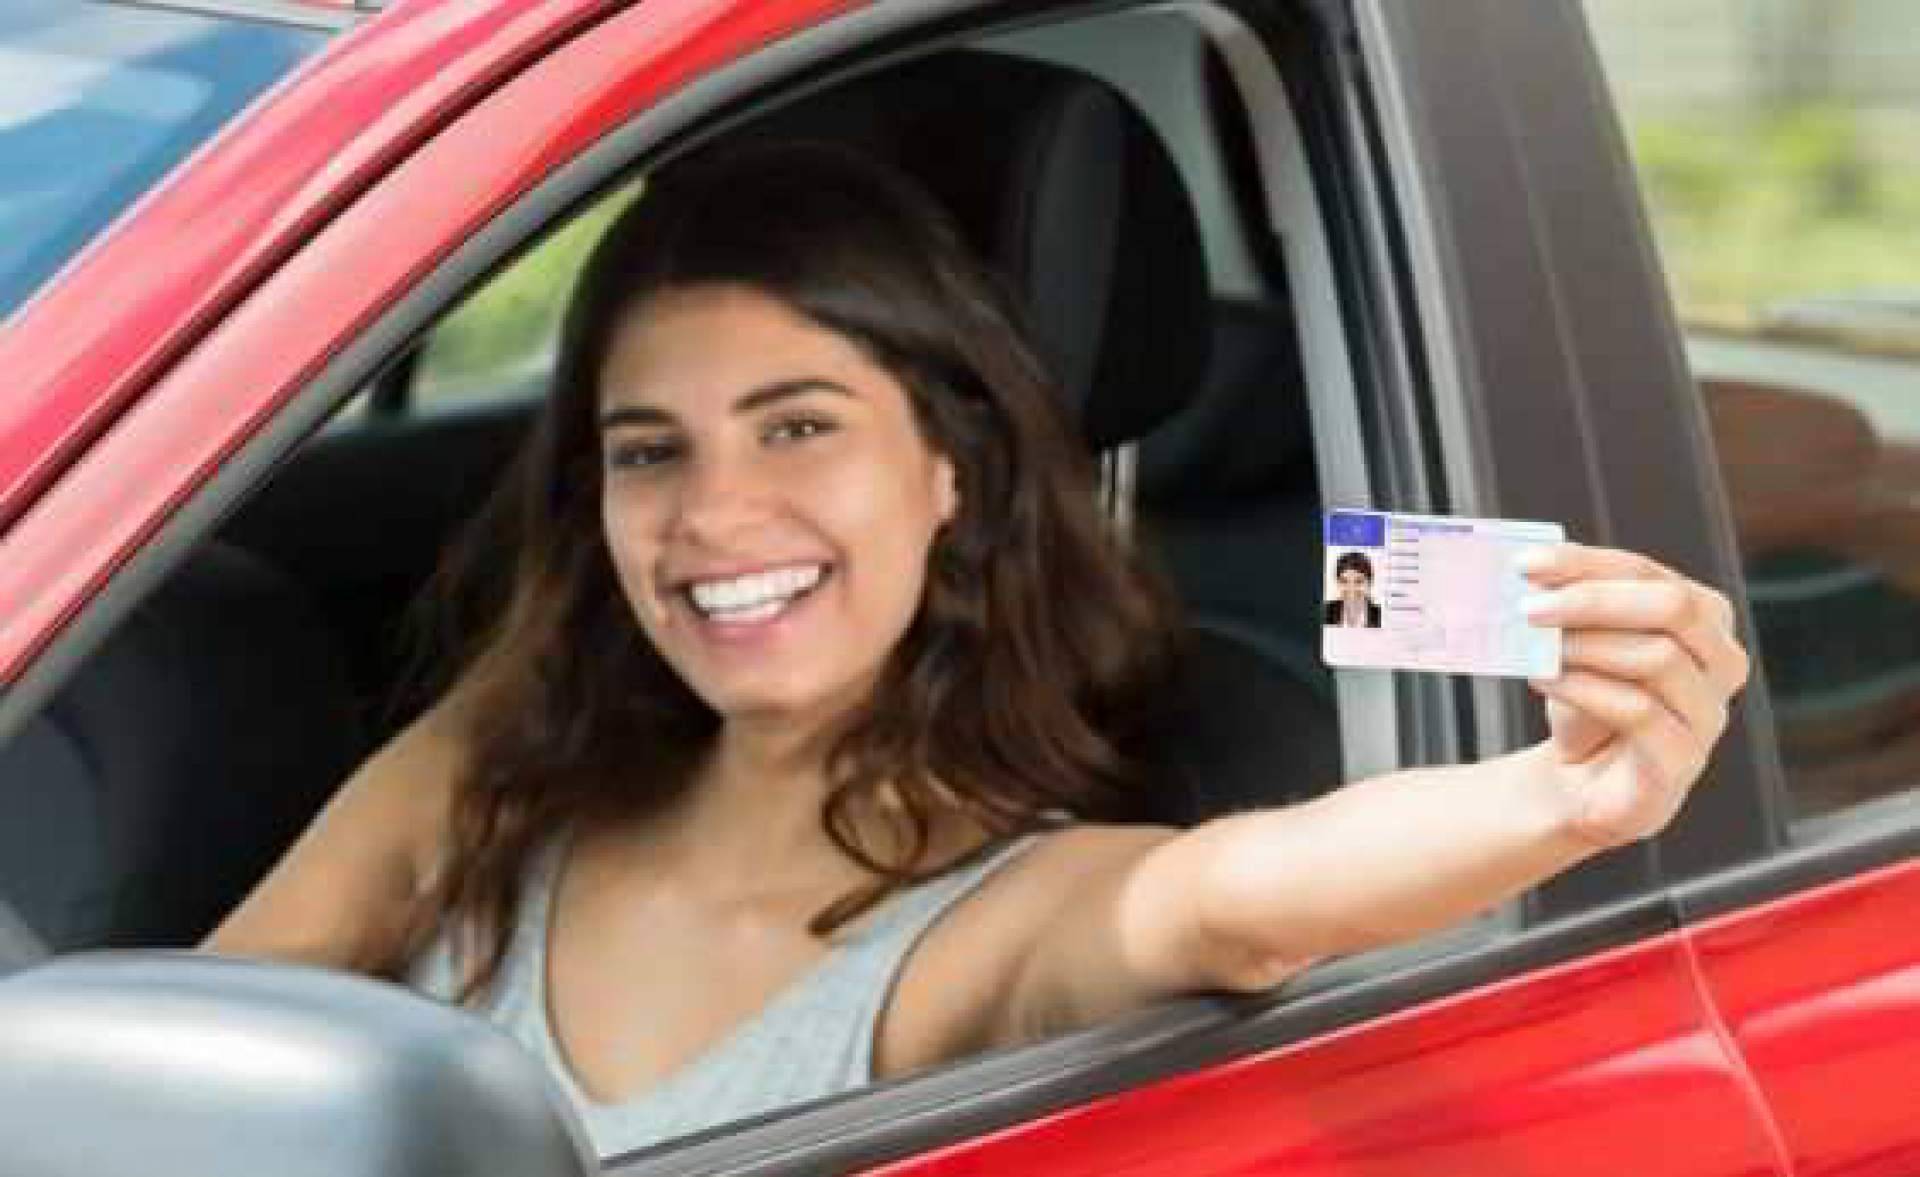 Renovar el carnet de conducir sin necesidad de ir a tráfico. ¿Es posible?